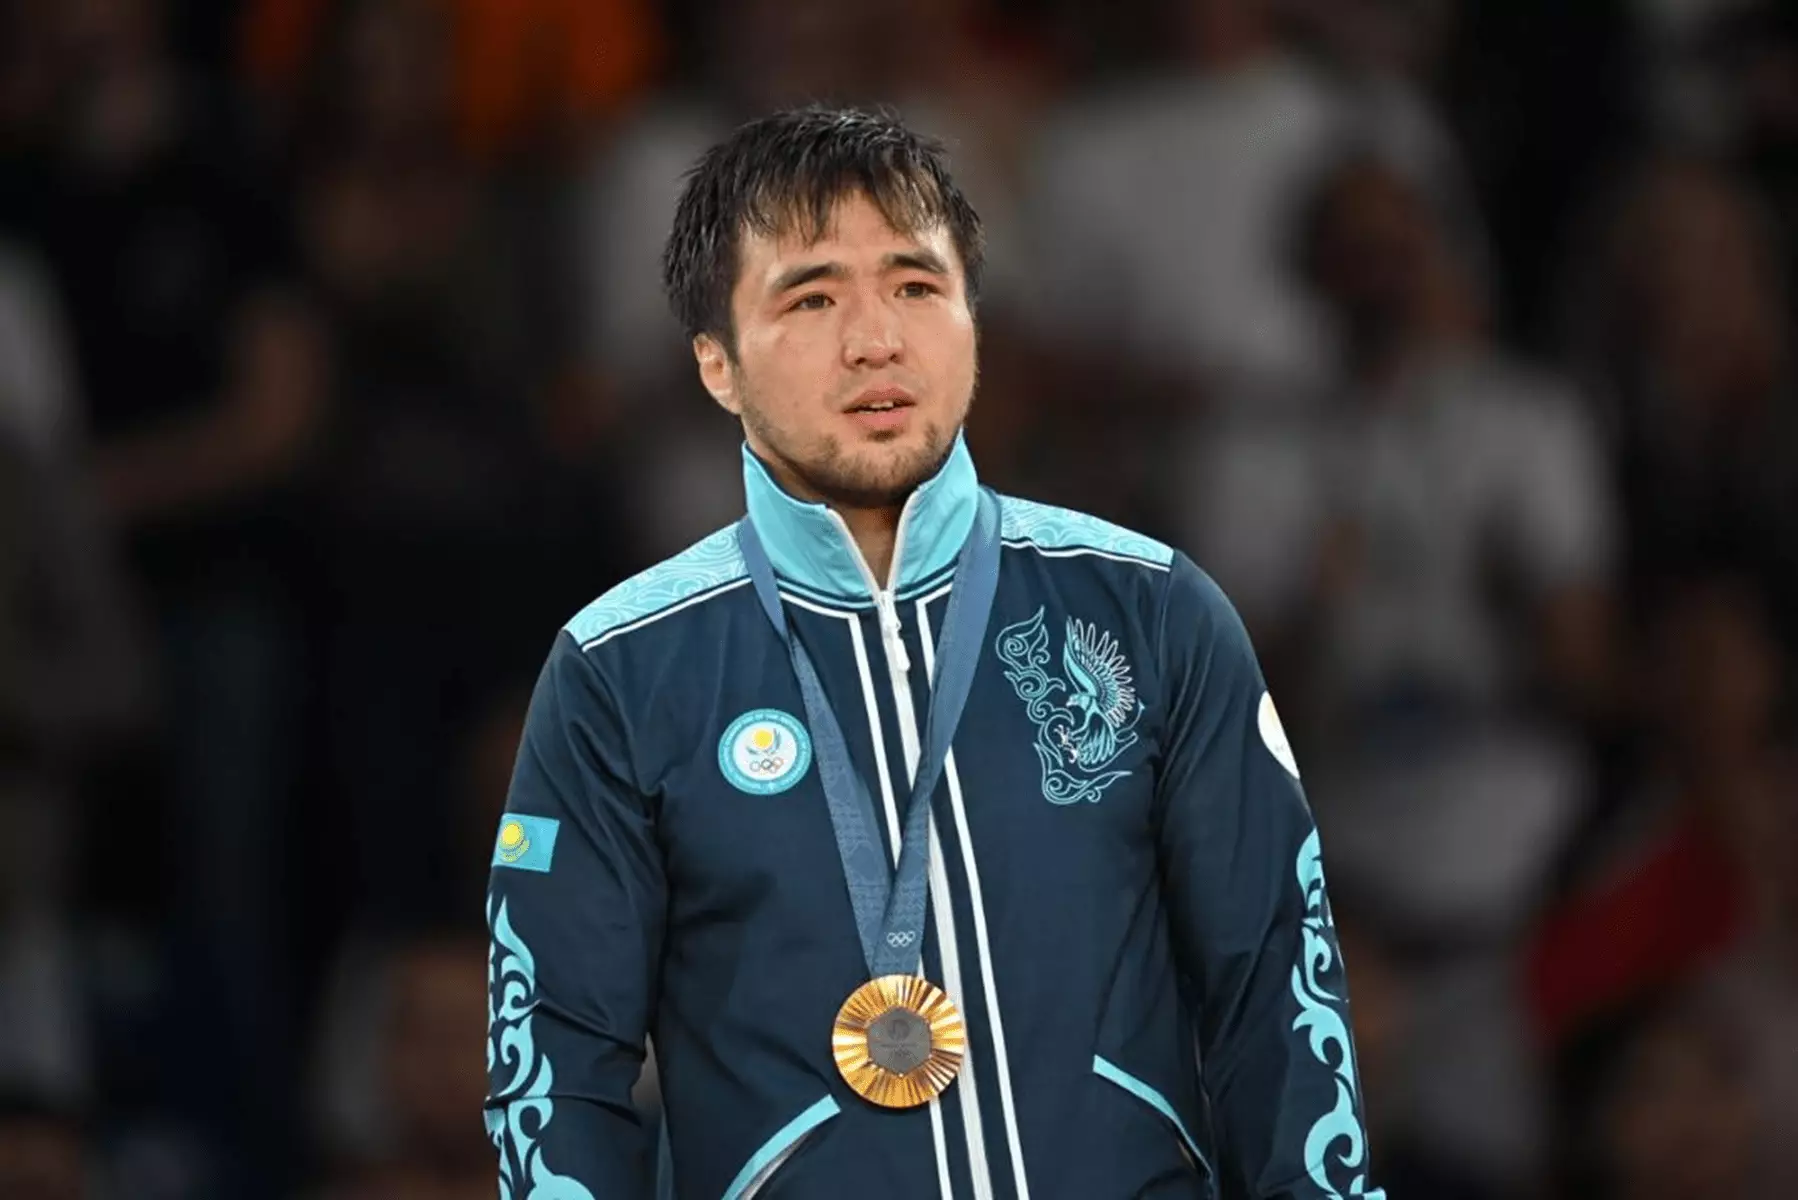 Елдос Сметов первый чемпион Олимпийских игр по дзюдо в истории Казахстана